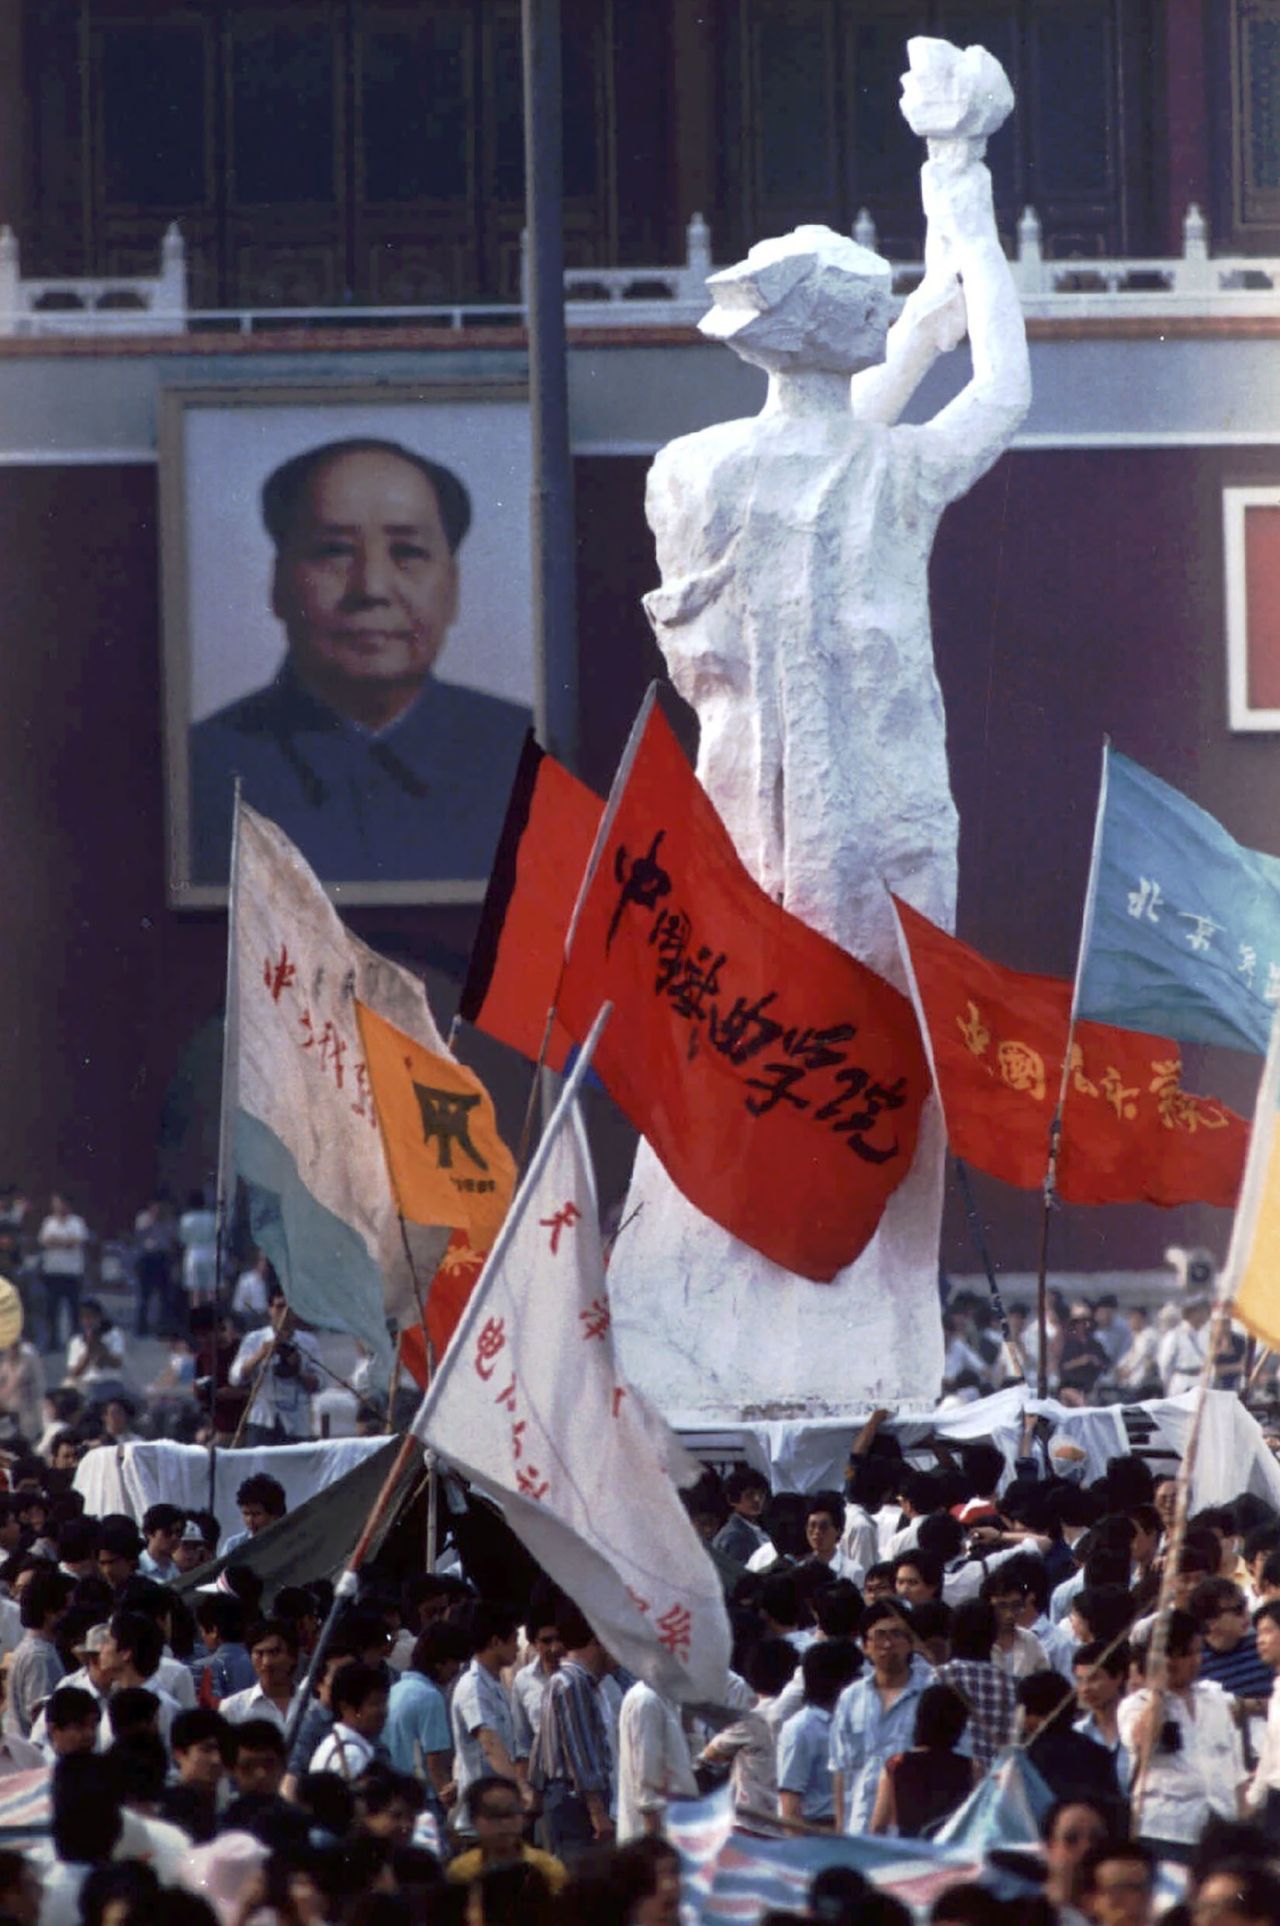 Os manifestantes construíram uma estátua da Deusa da Democracia, de dez metros de altura, que permaneceu de 30 de maio de 1989 a 4 de junho de 1989. Fonte da imagem: [CNN](https://www.cnn.com/style/article/tiananmen-square-goddess-of-democracy/index.html).